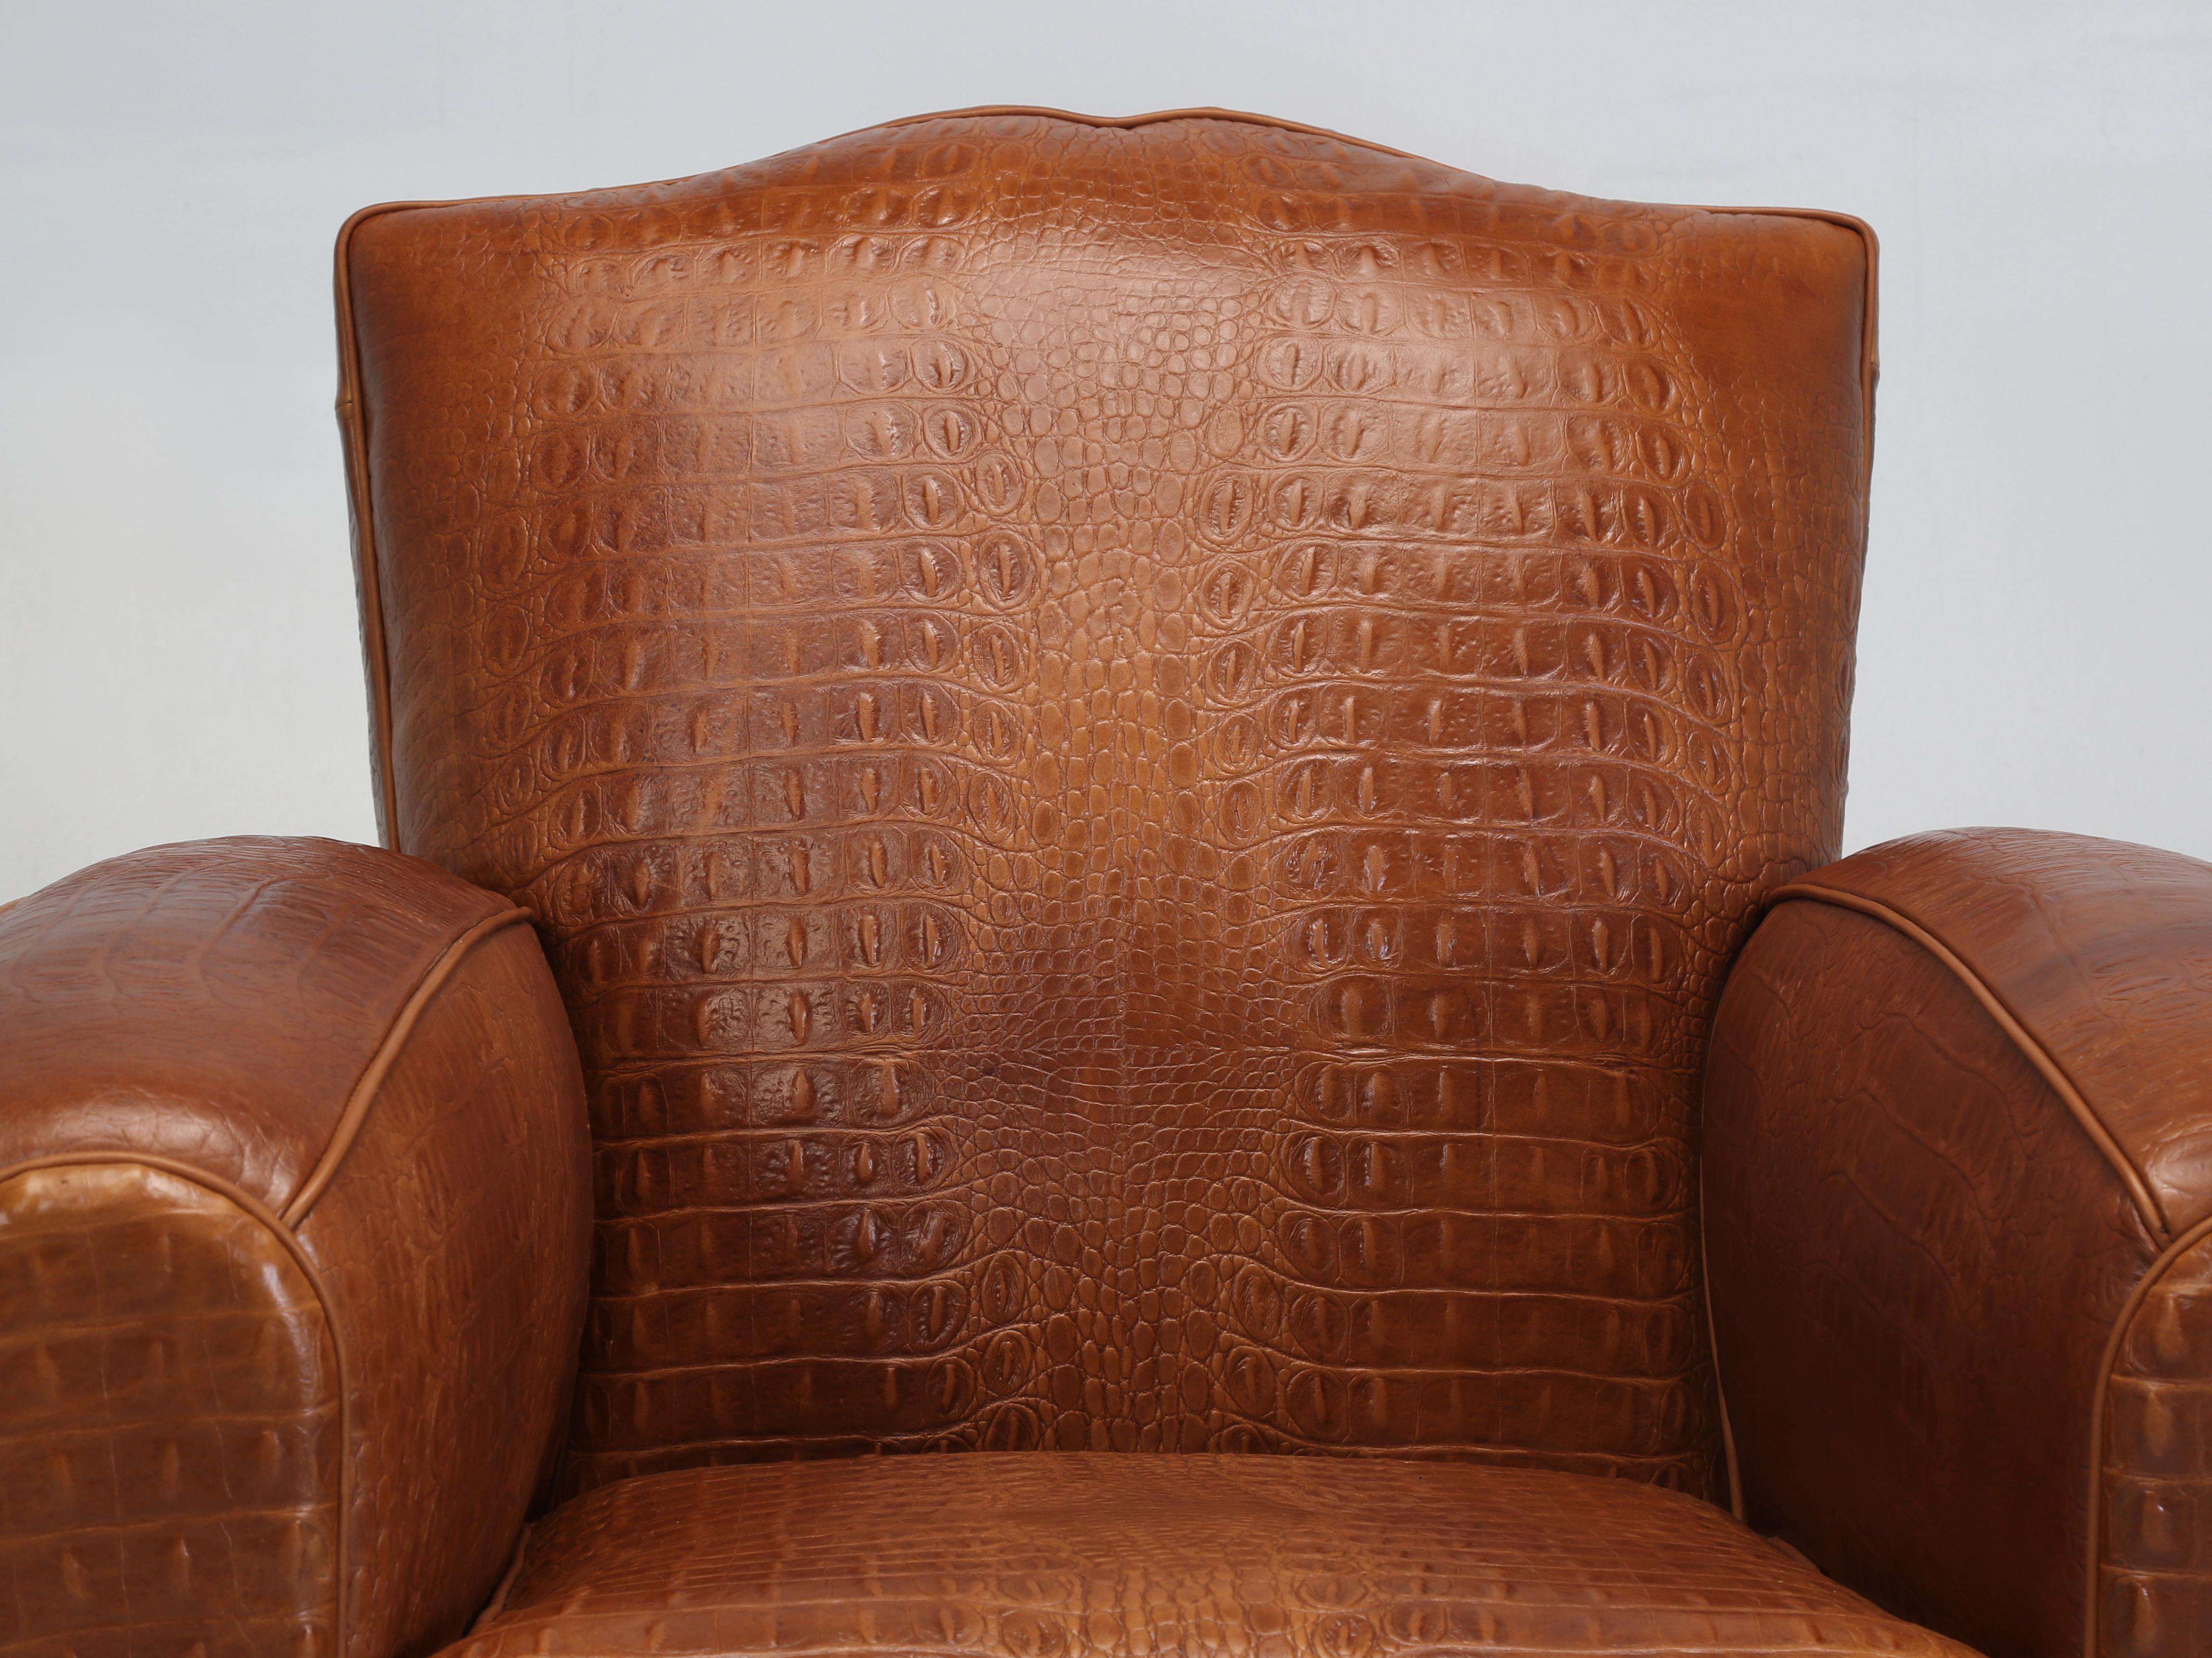 Französisch Art Deco Schnurrbart Stil Leder Club Chair gepolstert in einem wunderschönen Cognac farbigen Faux Krokodil Echtleder aus Italien importiert und überraschend weich für eine geprägte Leder. Wir haben uns von unserem